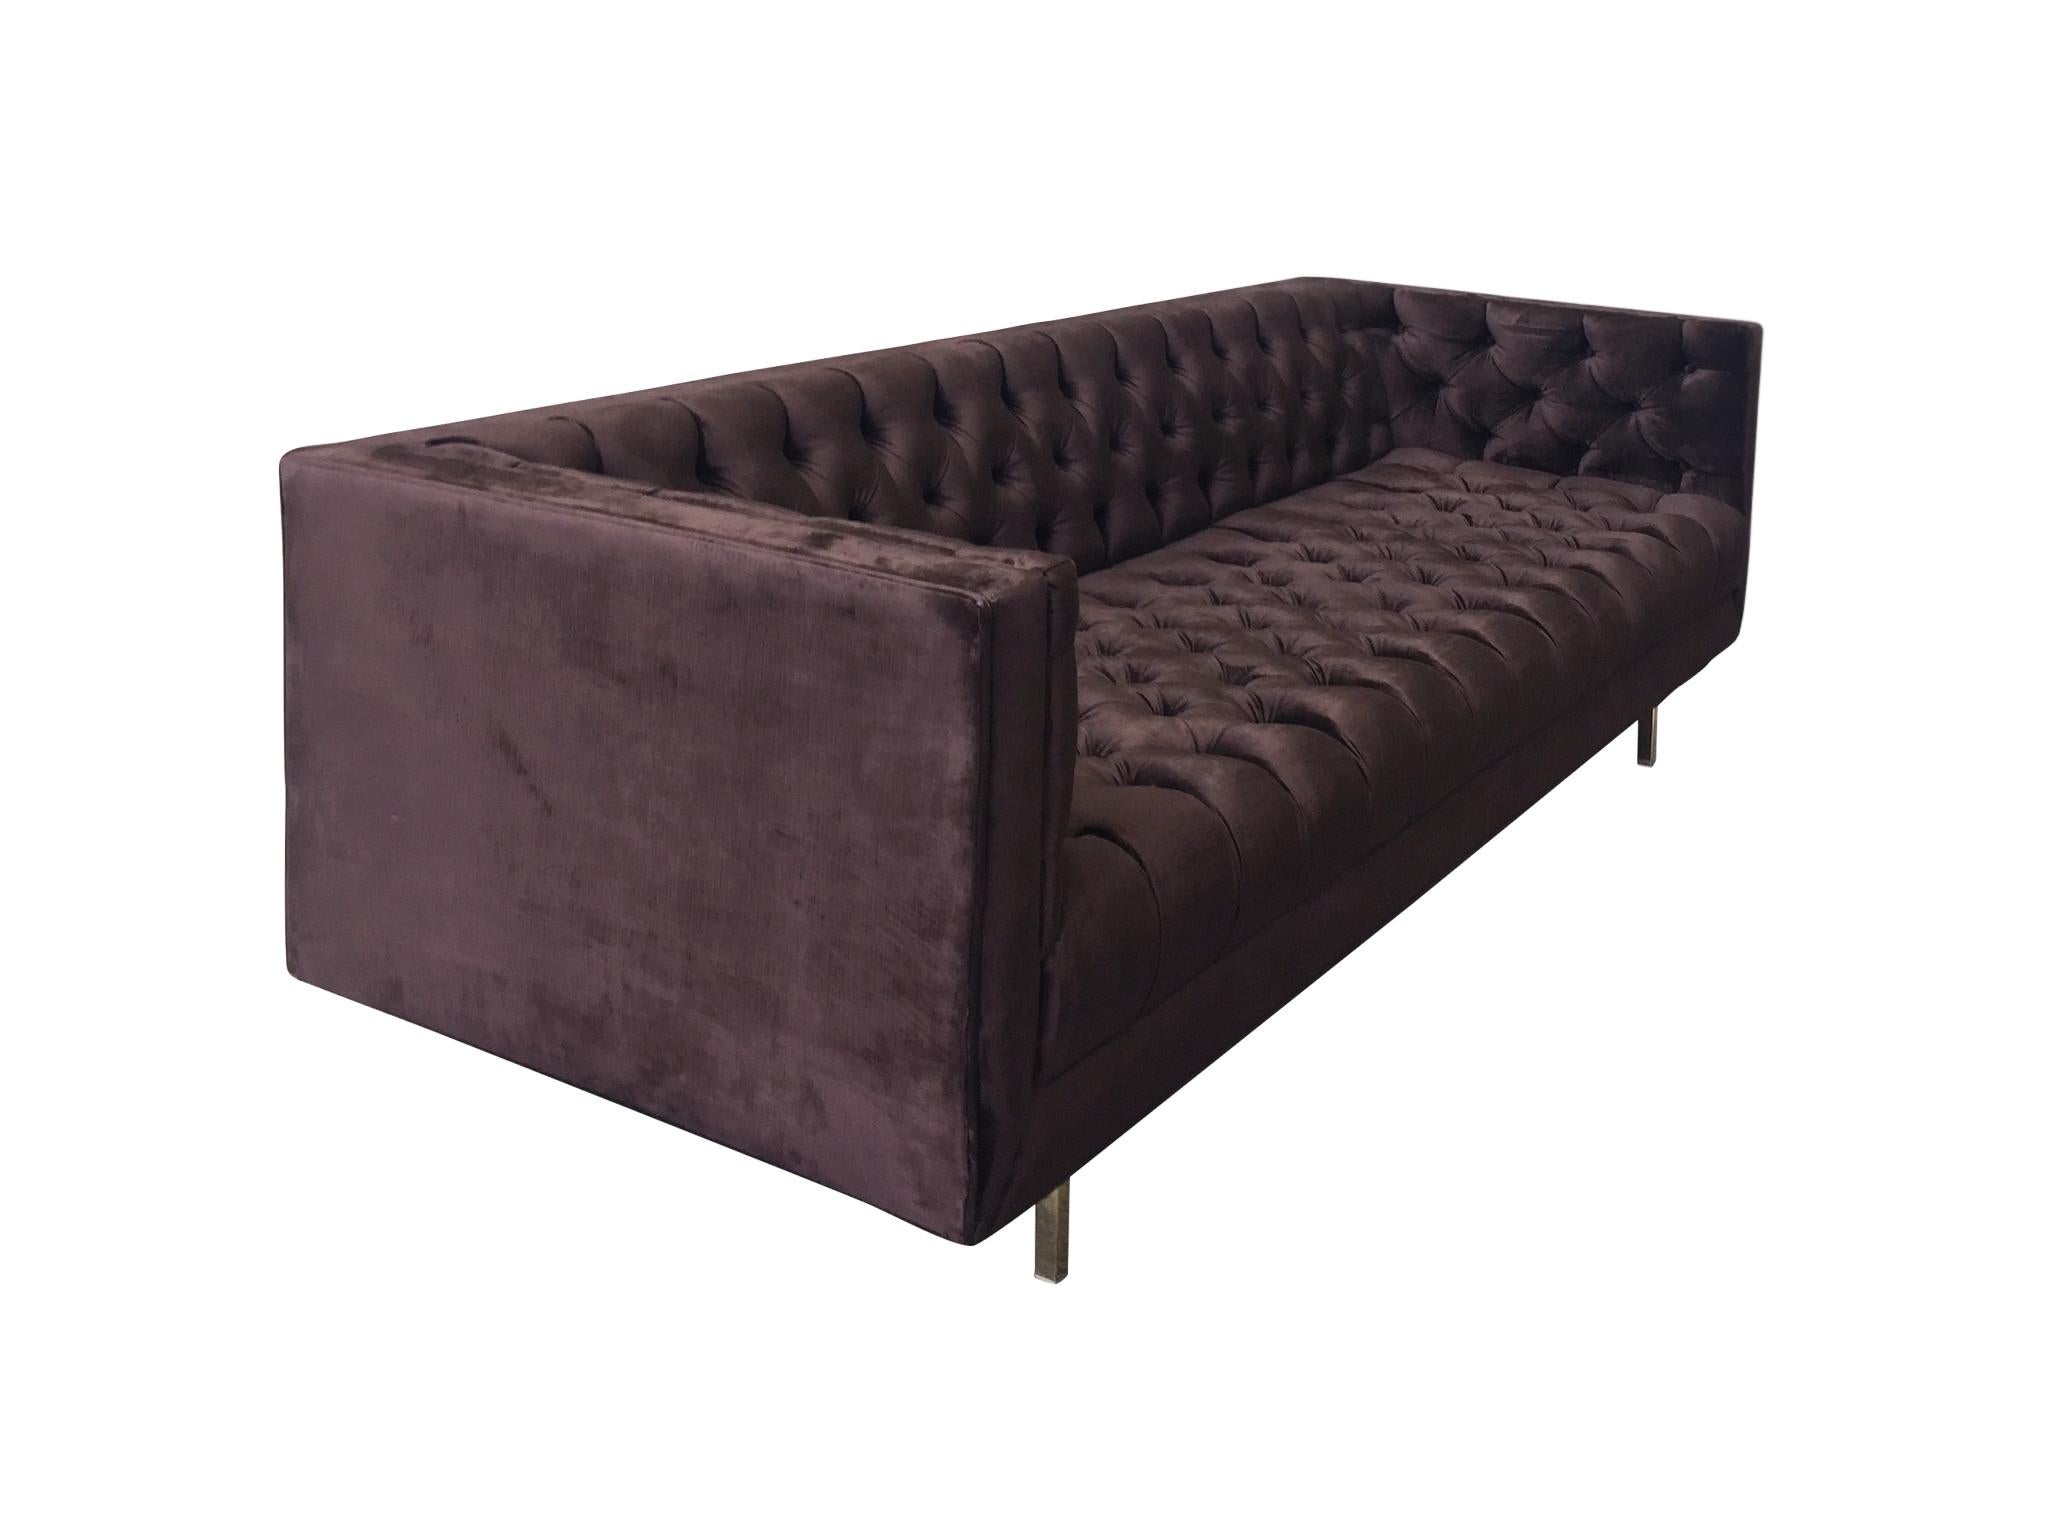 plum sofa